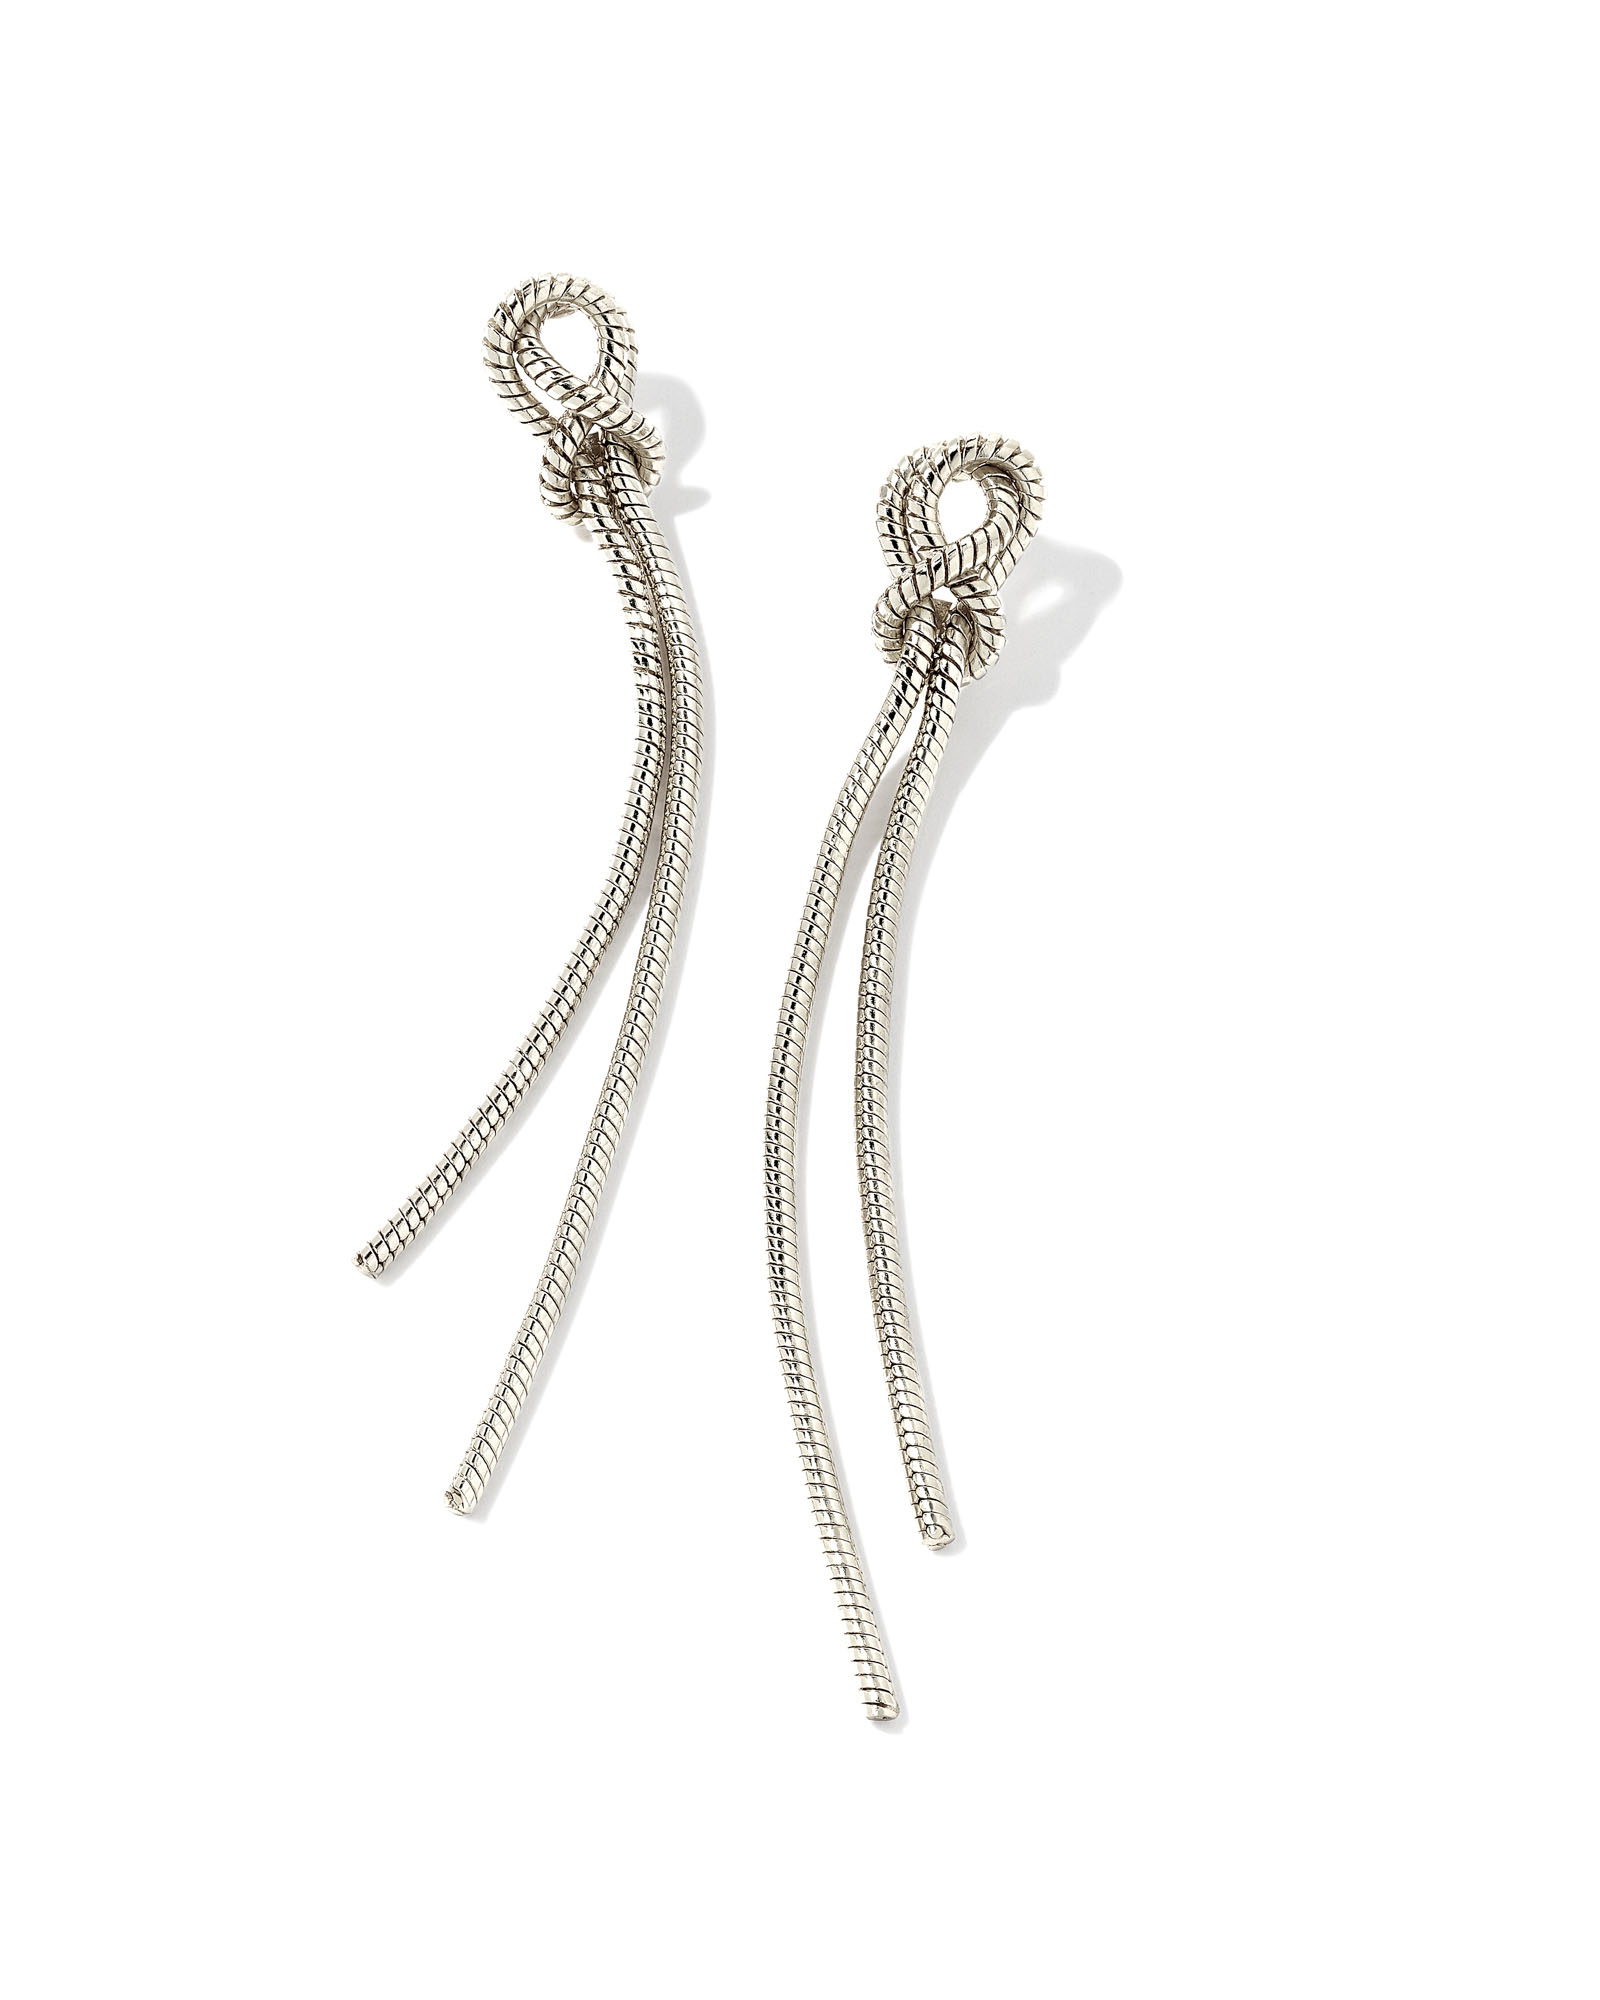 Annie Linear Earrings in Silver | Kendra Scott